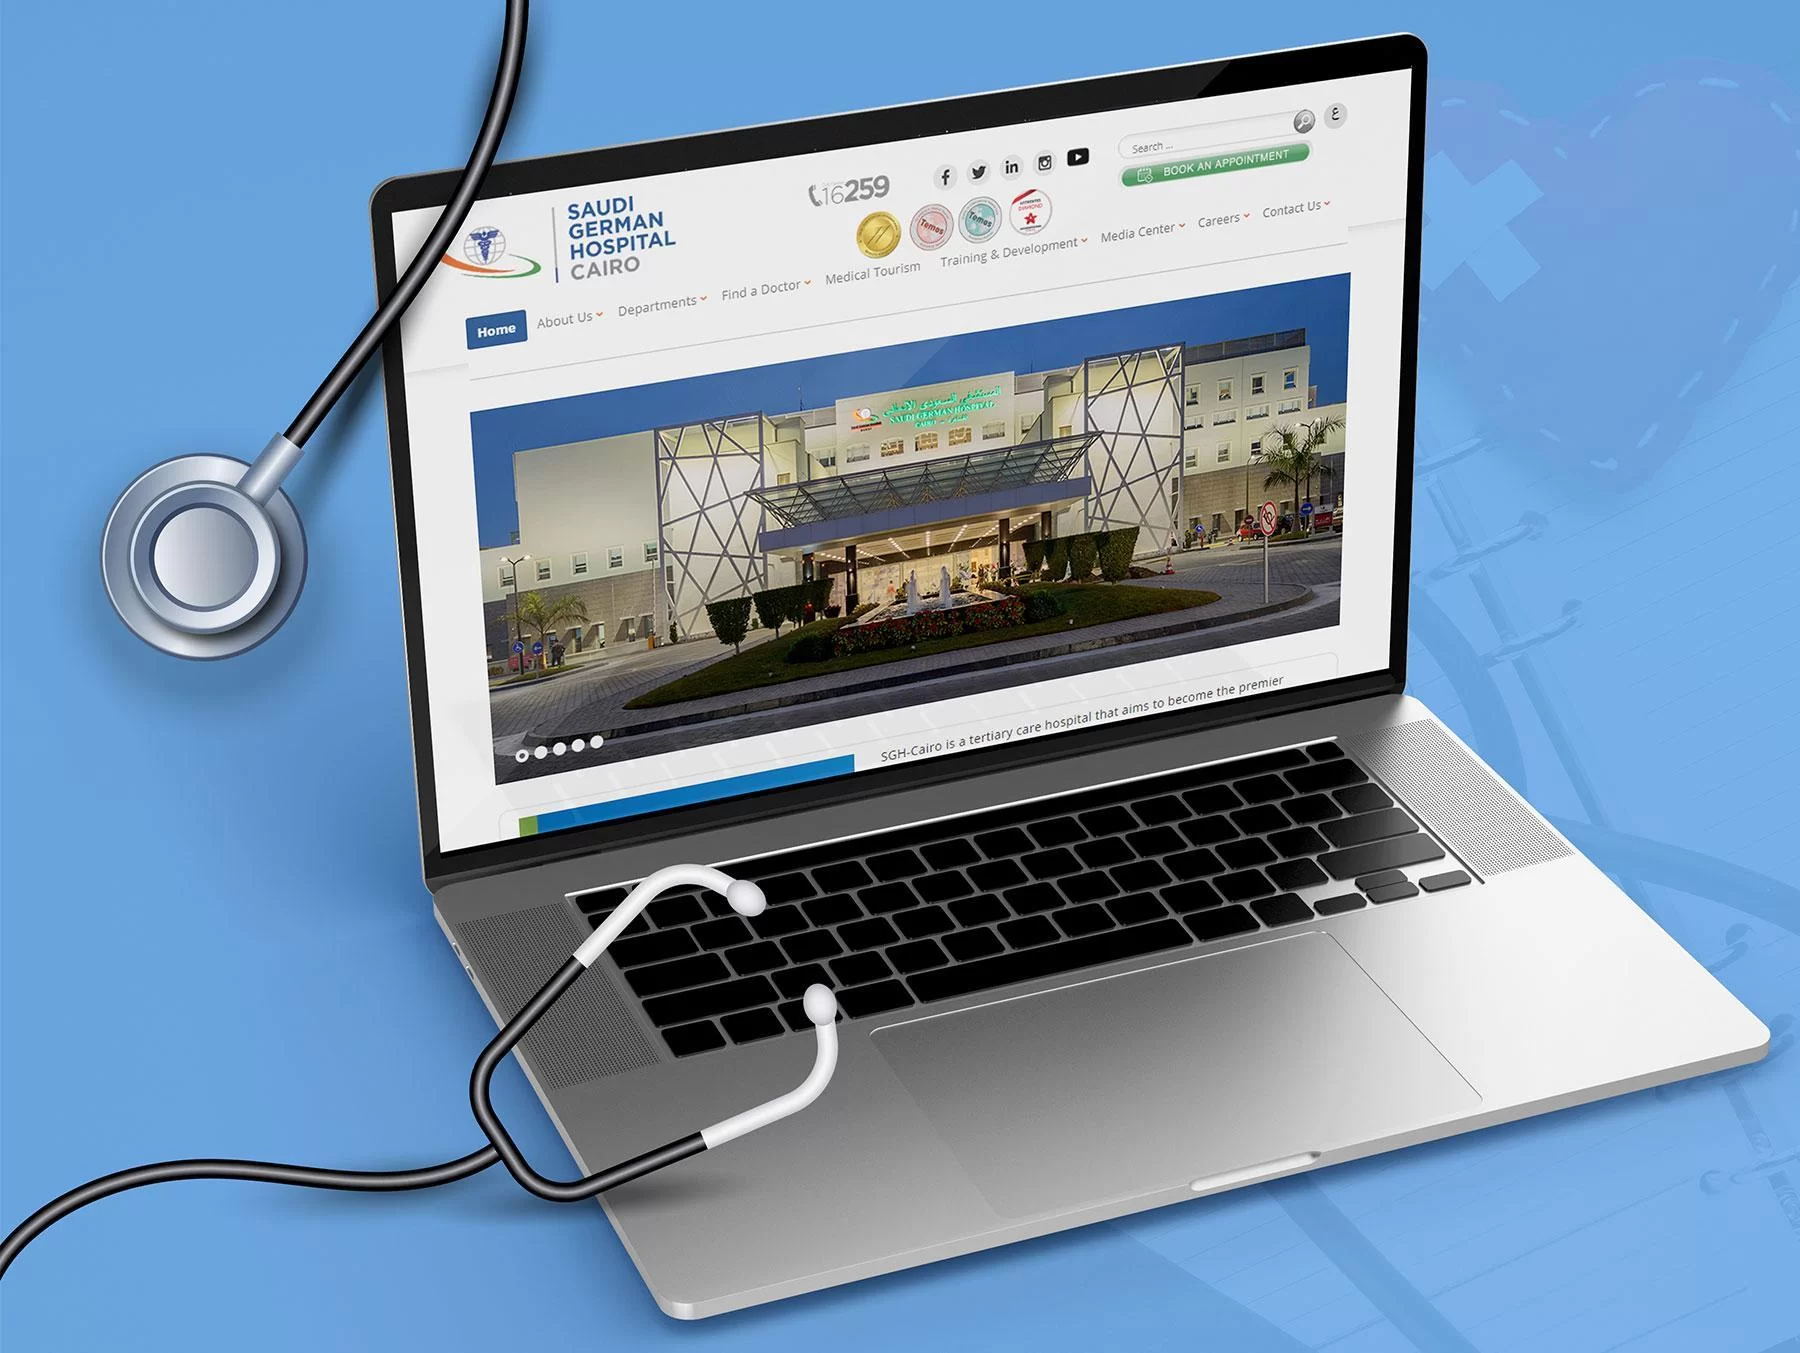 sgh cairo hospital website development 0